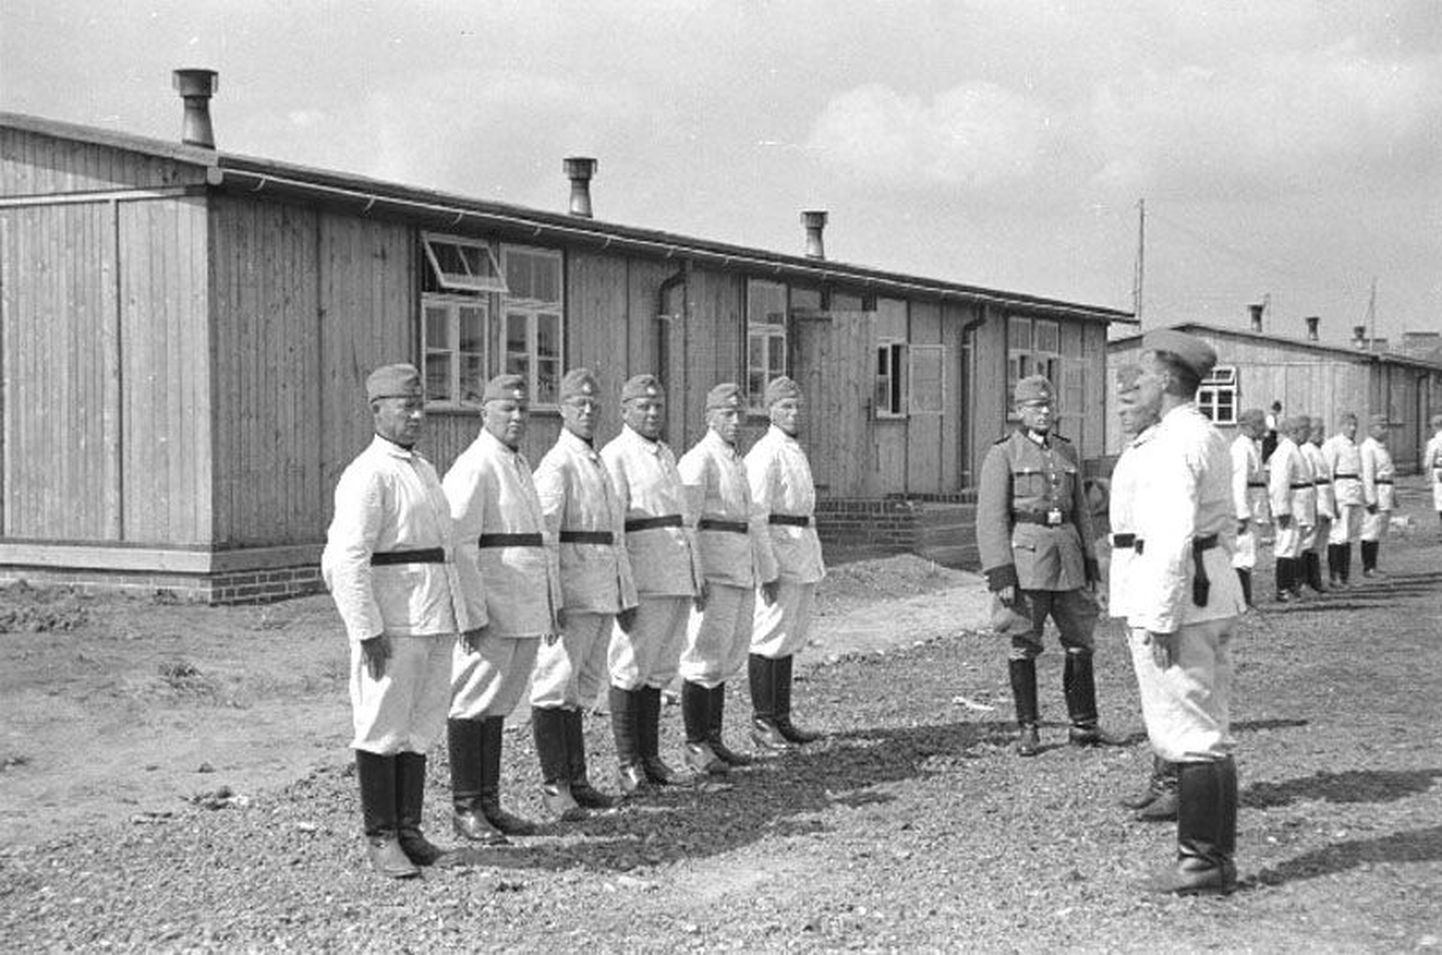 Eestlased Frankfurdis Oderi ääres Saksa kaitsepolitsei õppelaagris, kus mehed jagati kompaniidesse.